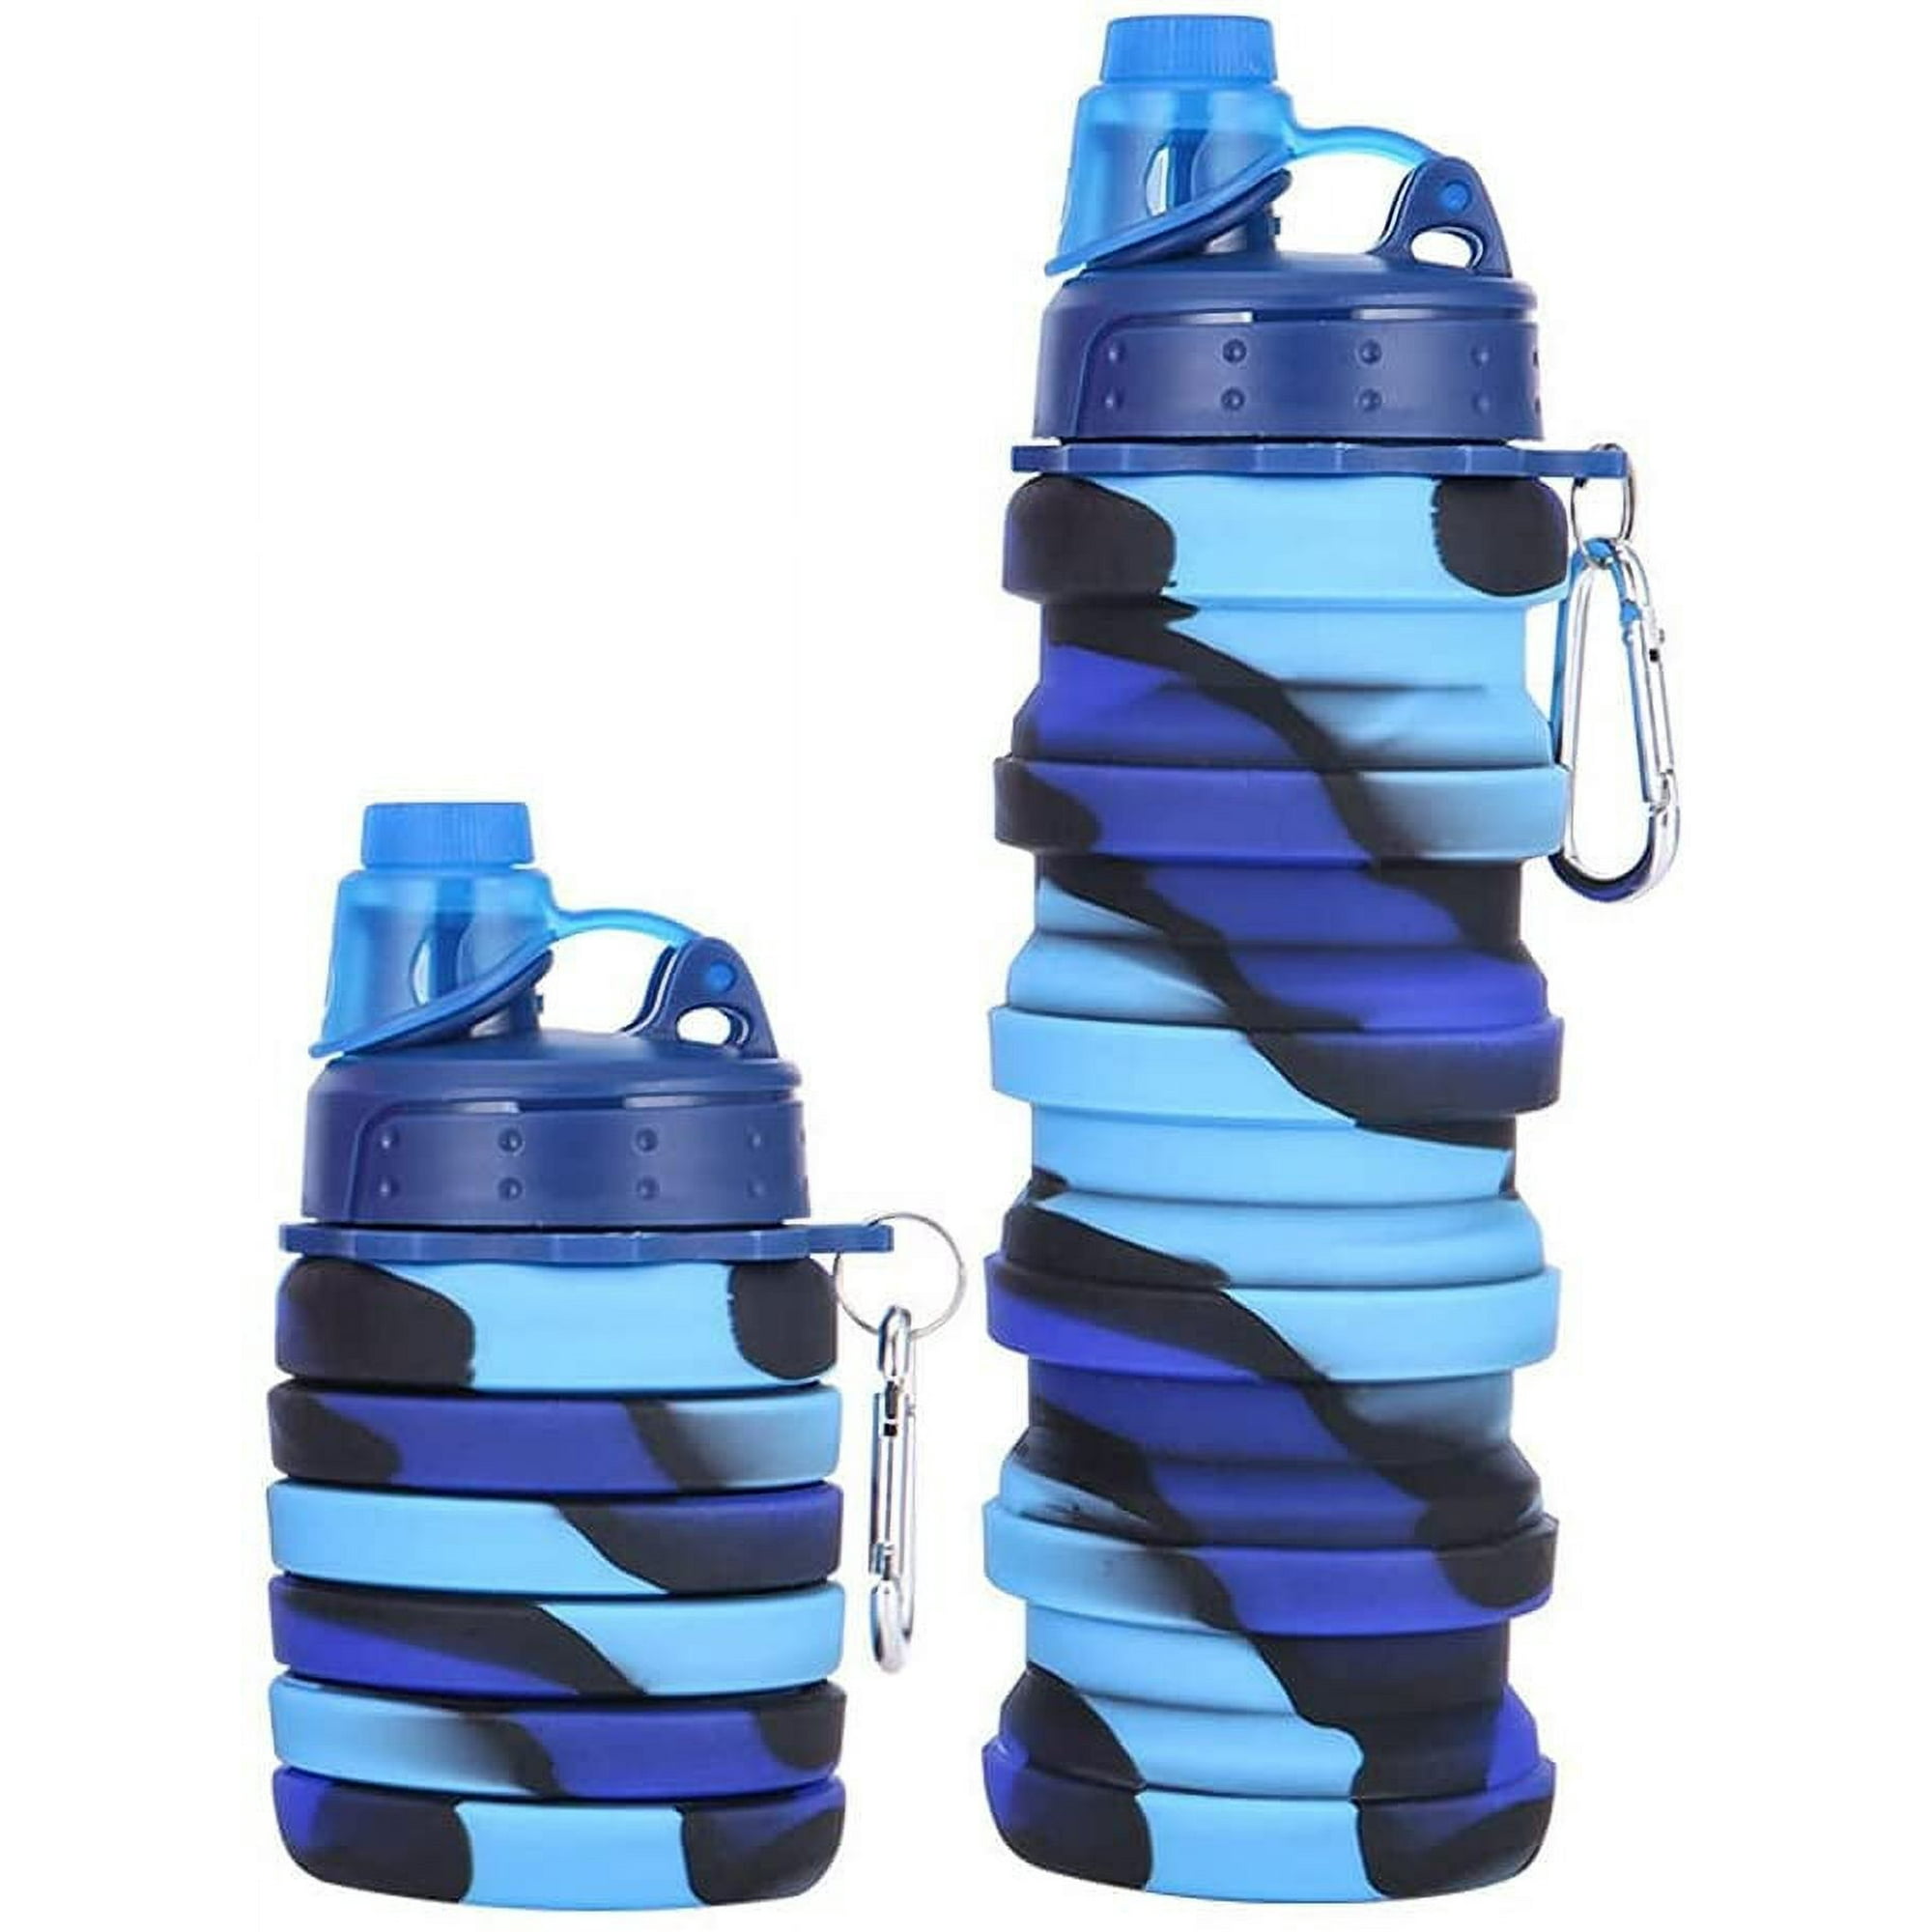 Botella Plegable de Silicona Ununa Azul de 800 ml - Promart